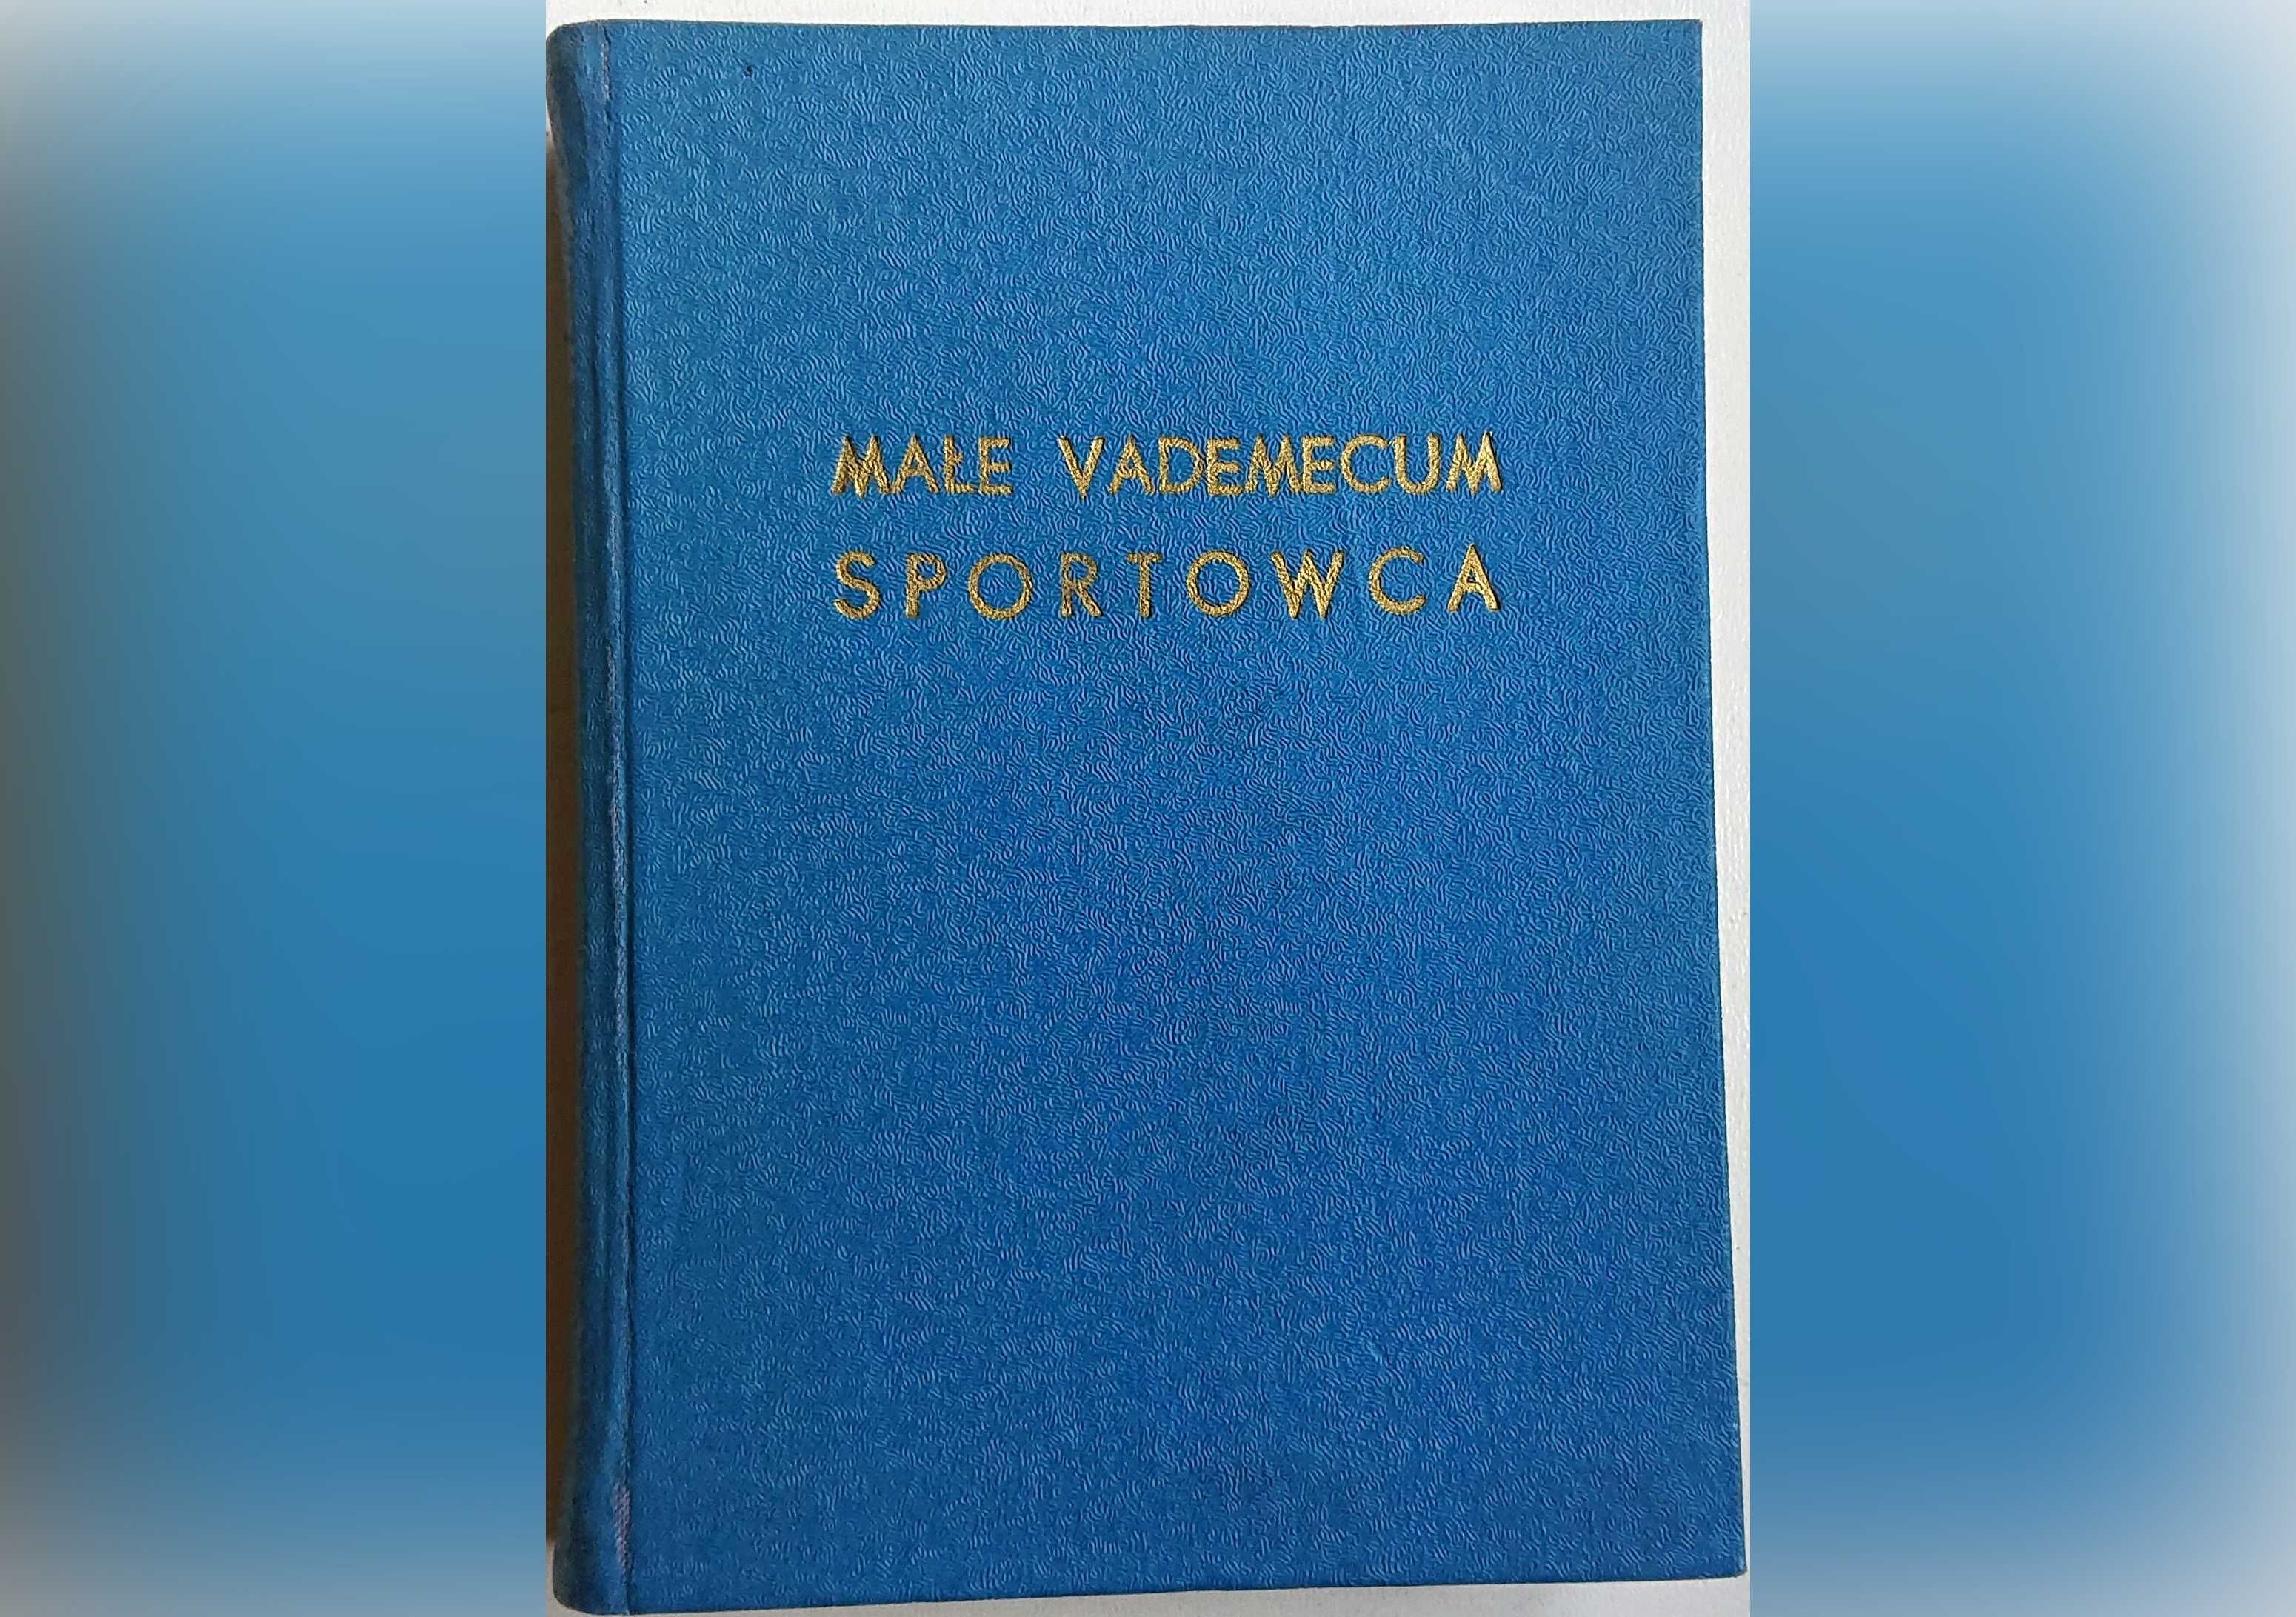 "Małe vademecum sportowca" - W. Lipniacki St. Zakrzewski - 1956